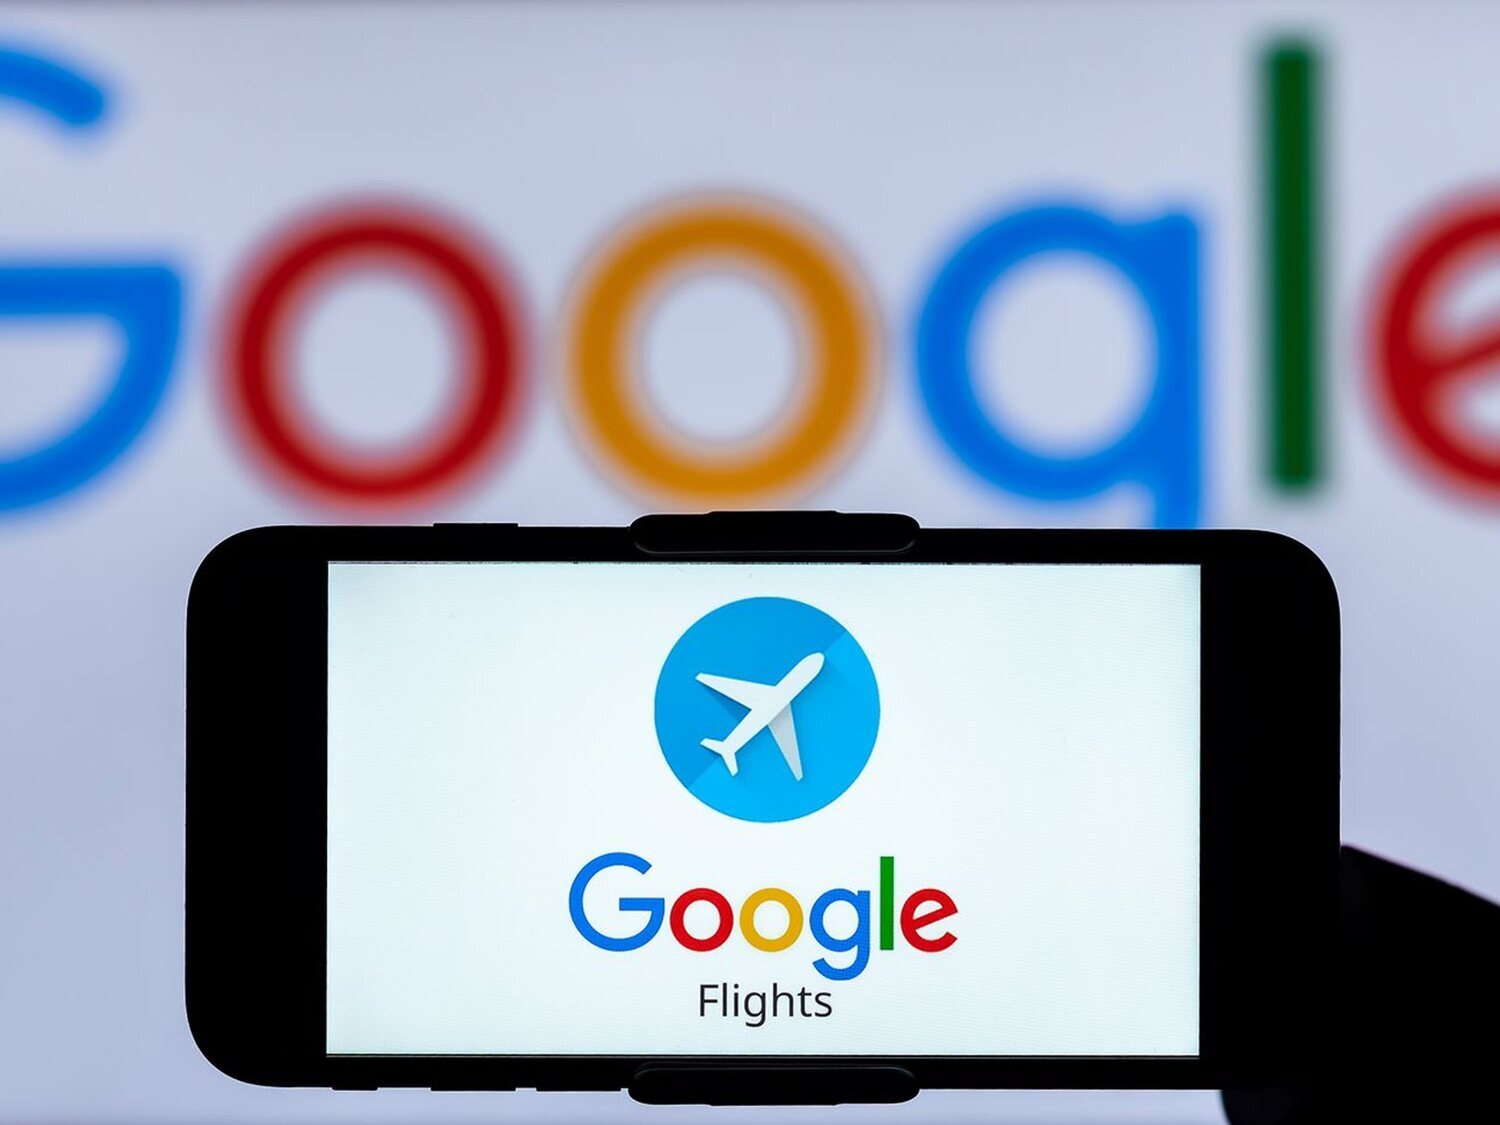 Así funciona Google Flights, la herramienta de Google para comprar vuelos baratos